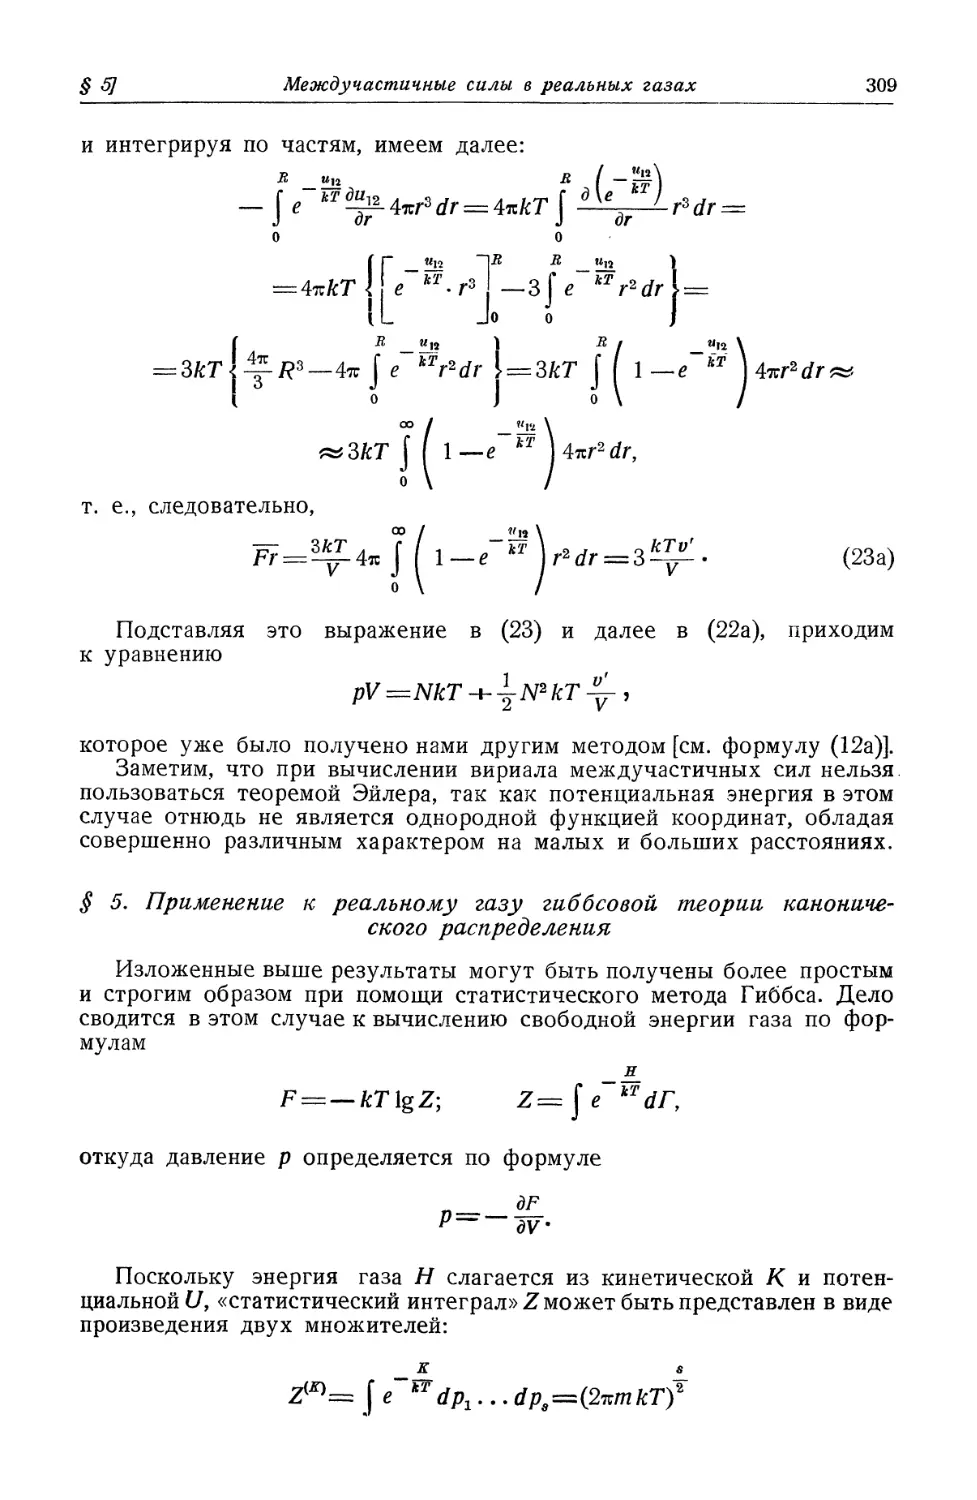 § 5. Применение к реальному газу гиббсовой теории канонического распределения